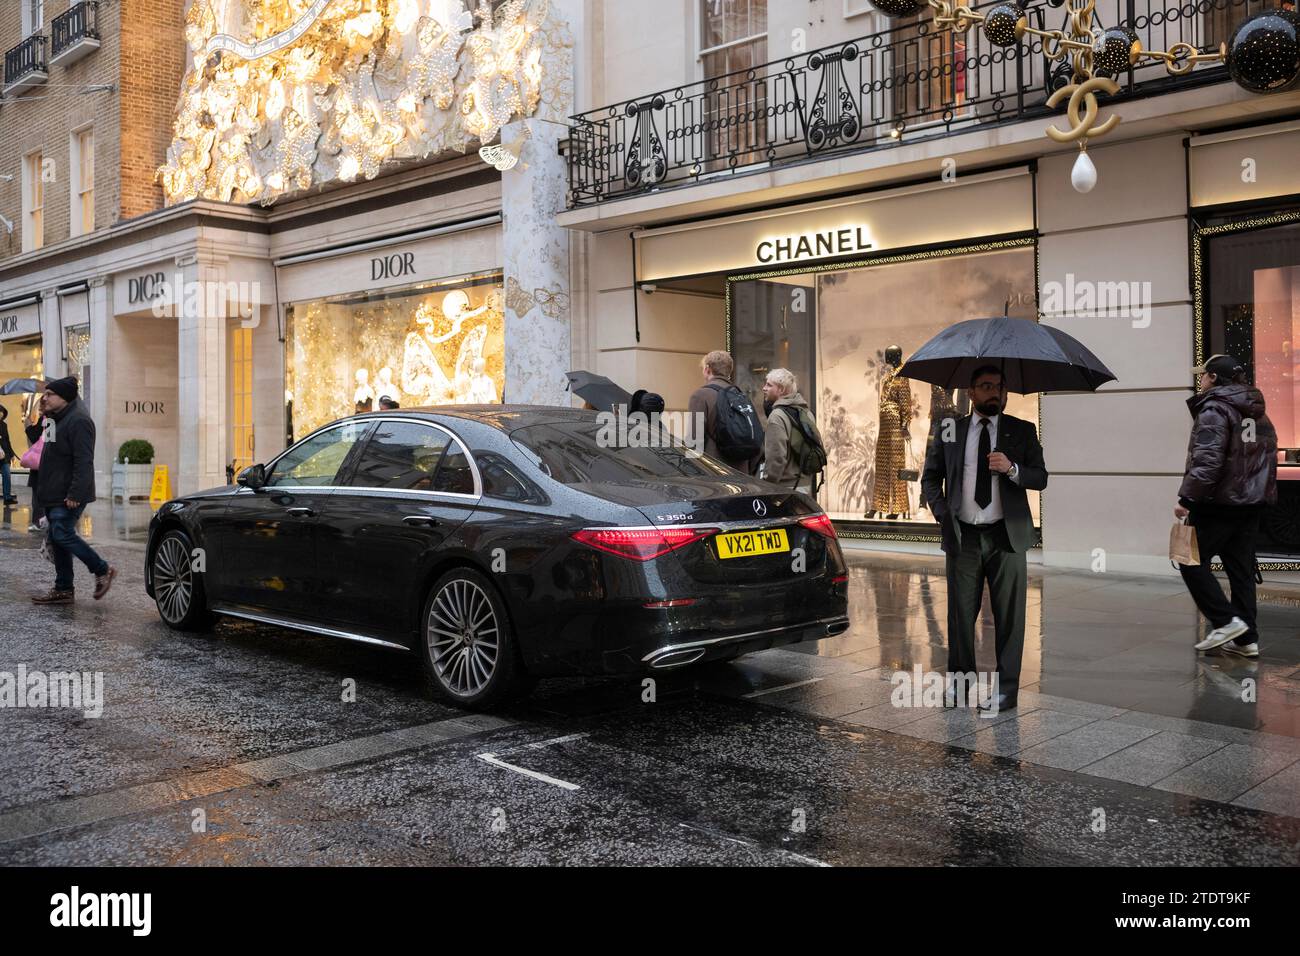 Un chauffeur attend que sa clientèle revienne de ses achats de produits de Noël de luxe le long de Old Bond Street par une journée hivernale humide, Londres, Angleterre Banque D'Images